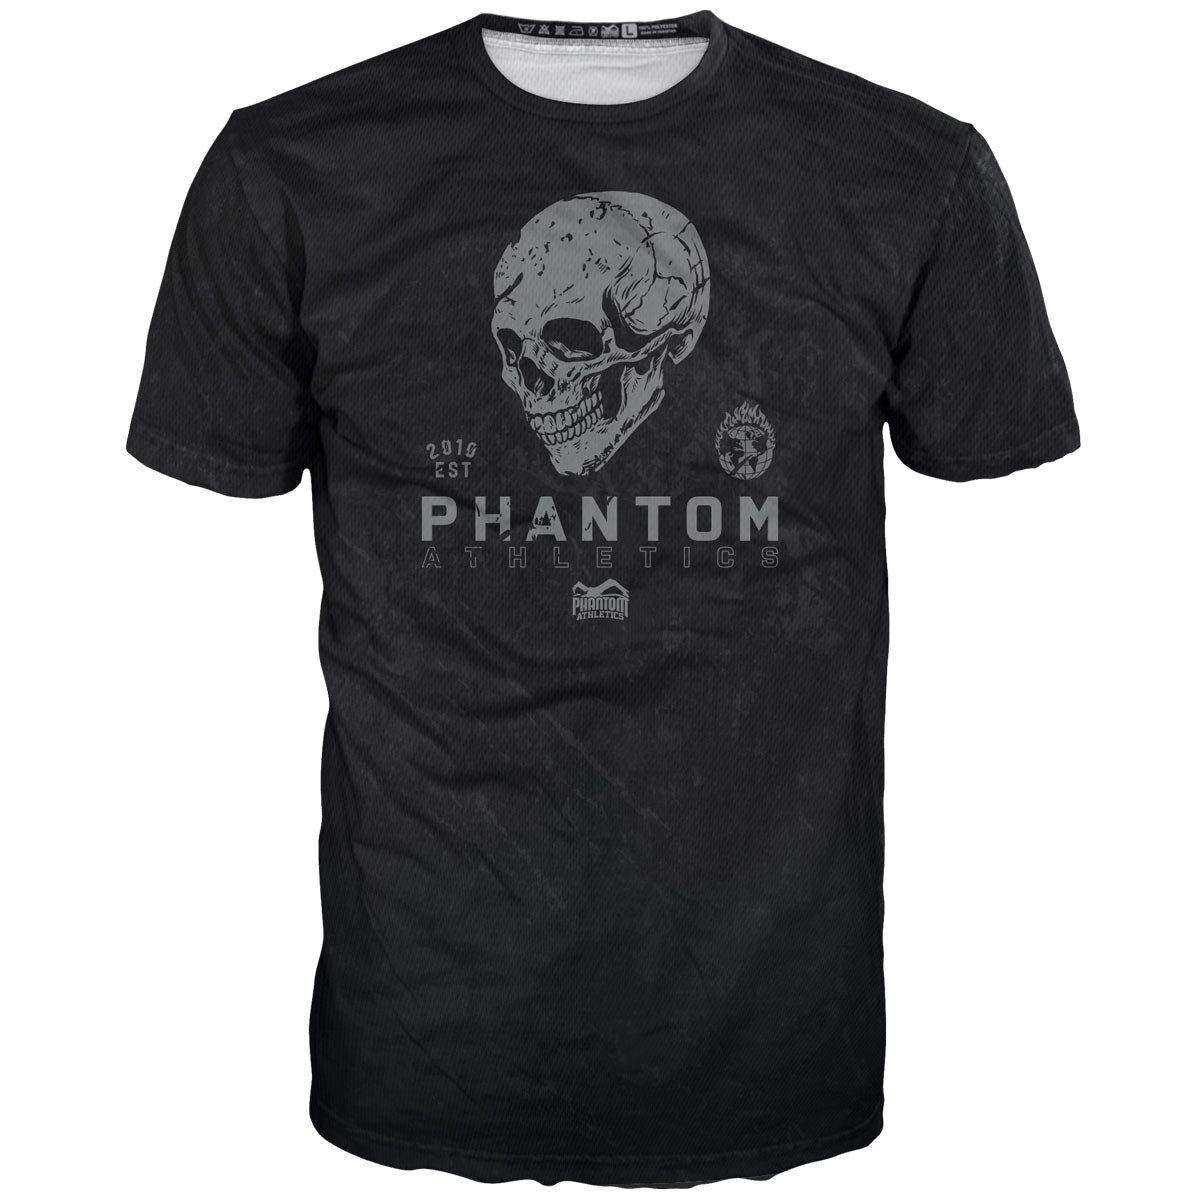 Phantom FIGHT ing koponya kivitelben koponyával. Ideális a harcművészeti edzésekhez. 